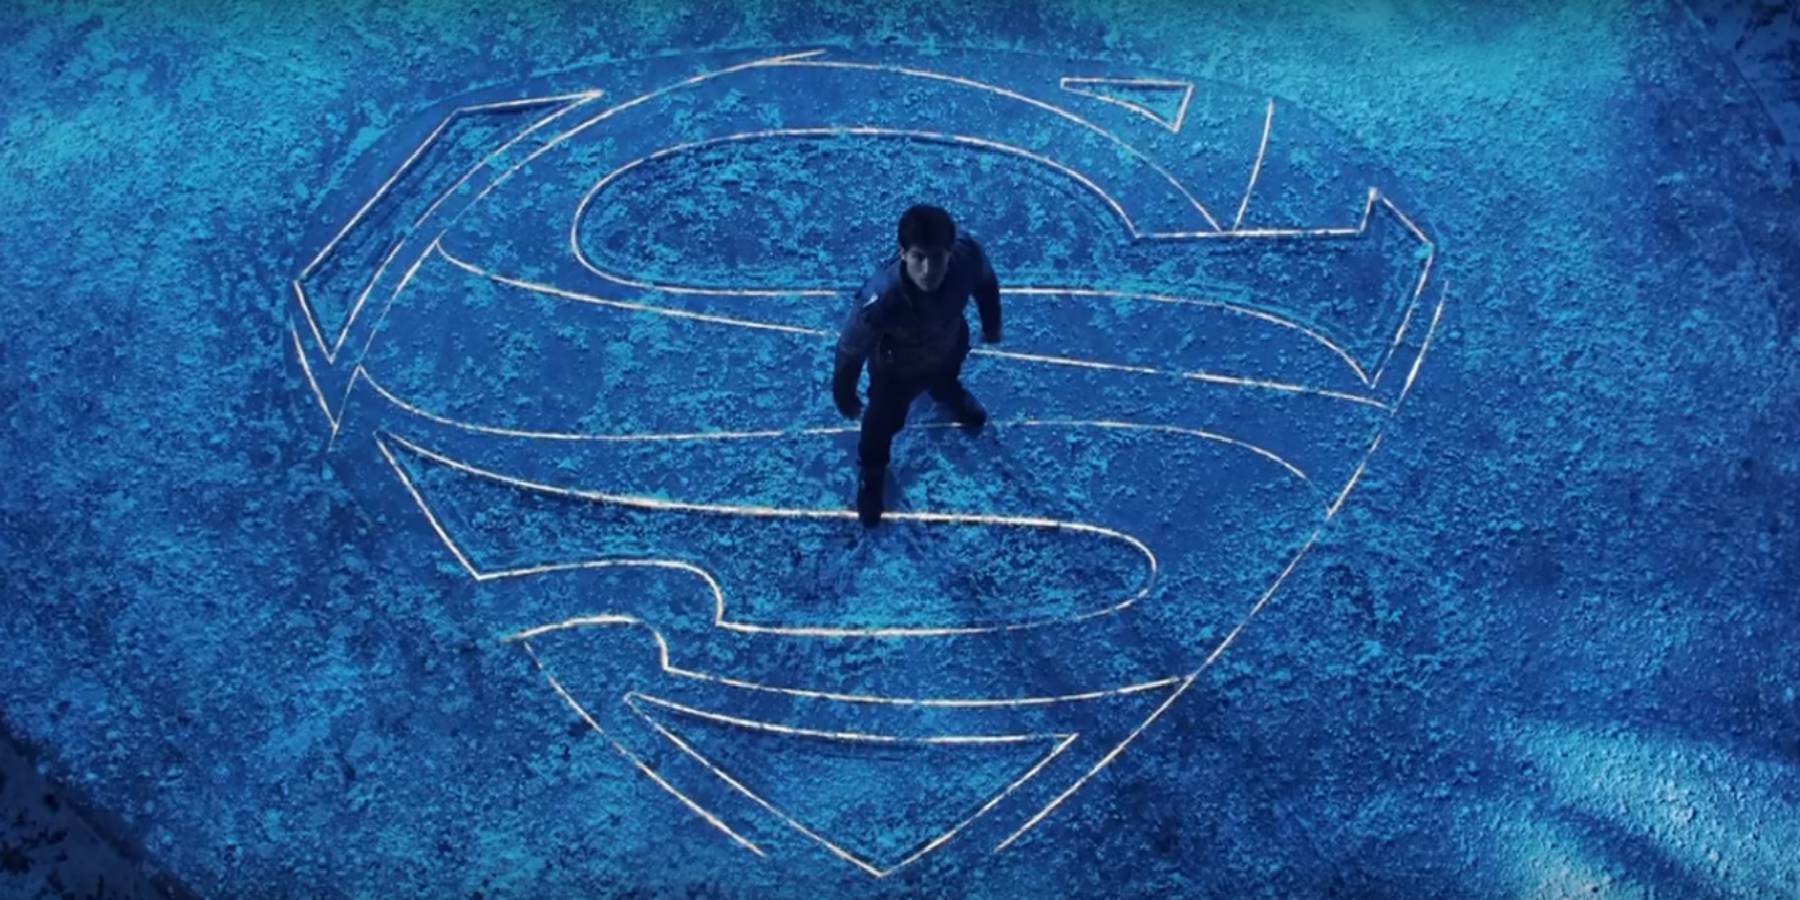 La serie Krypton estrena trailer | El futuro de Superman se forjó hace 100 años